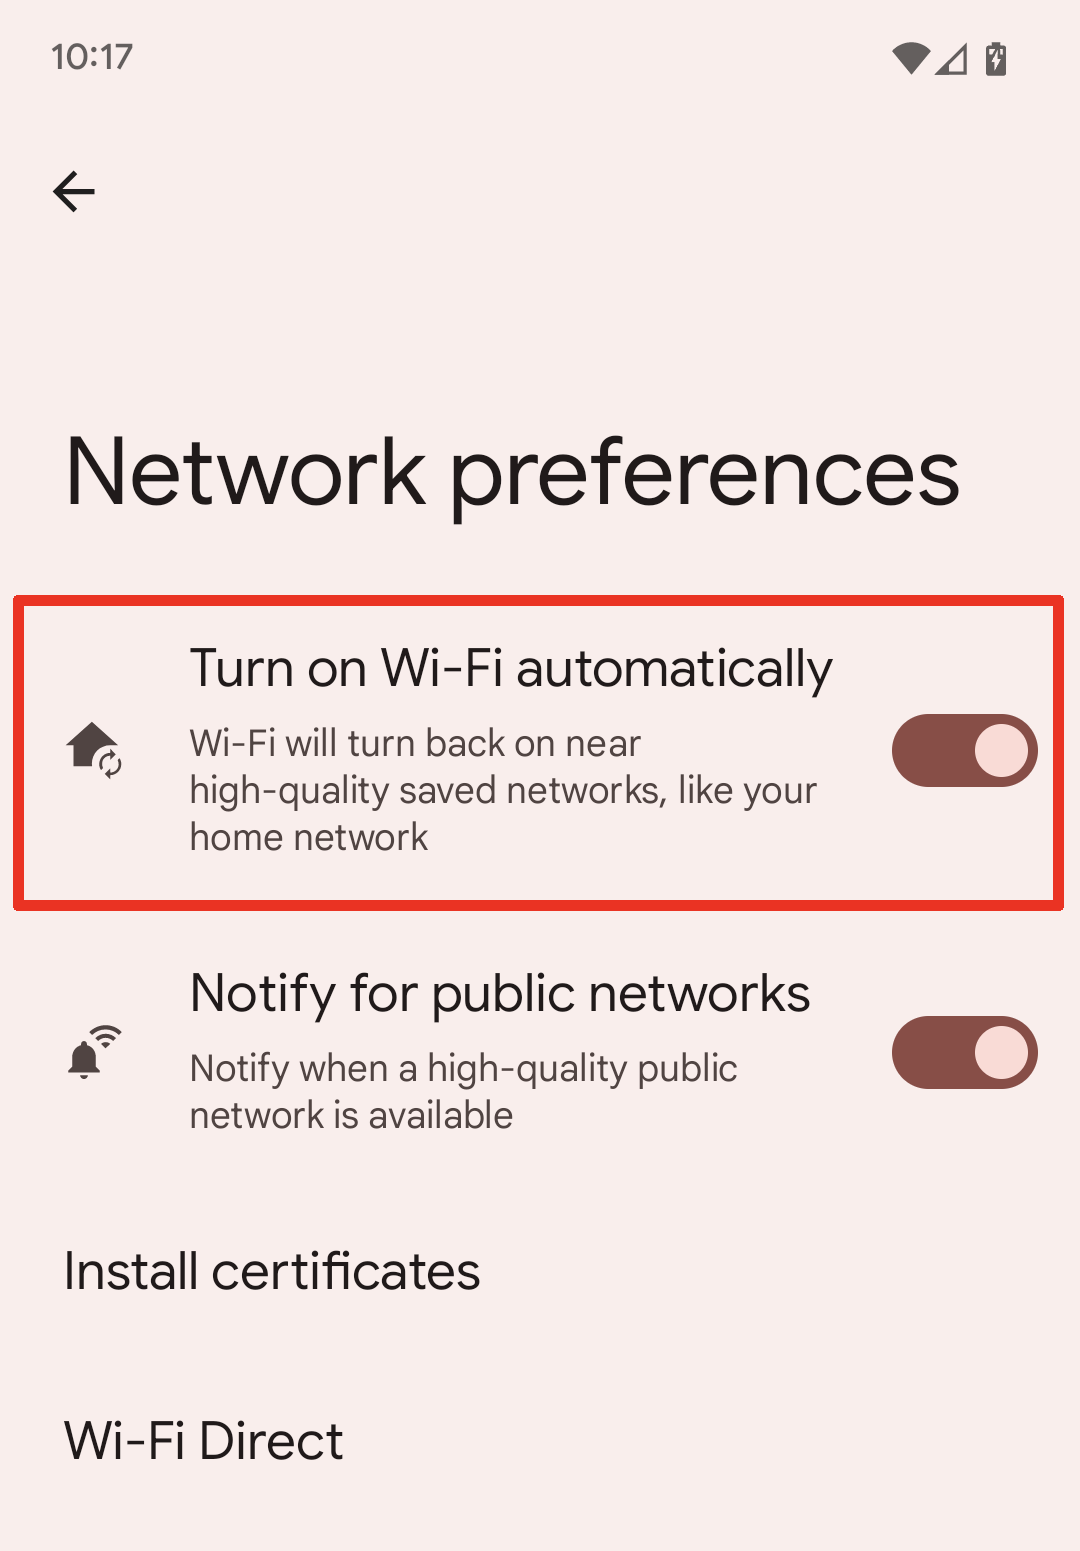 Ativar o Wi-Fi automaticamente